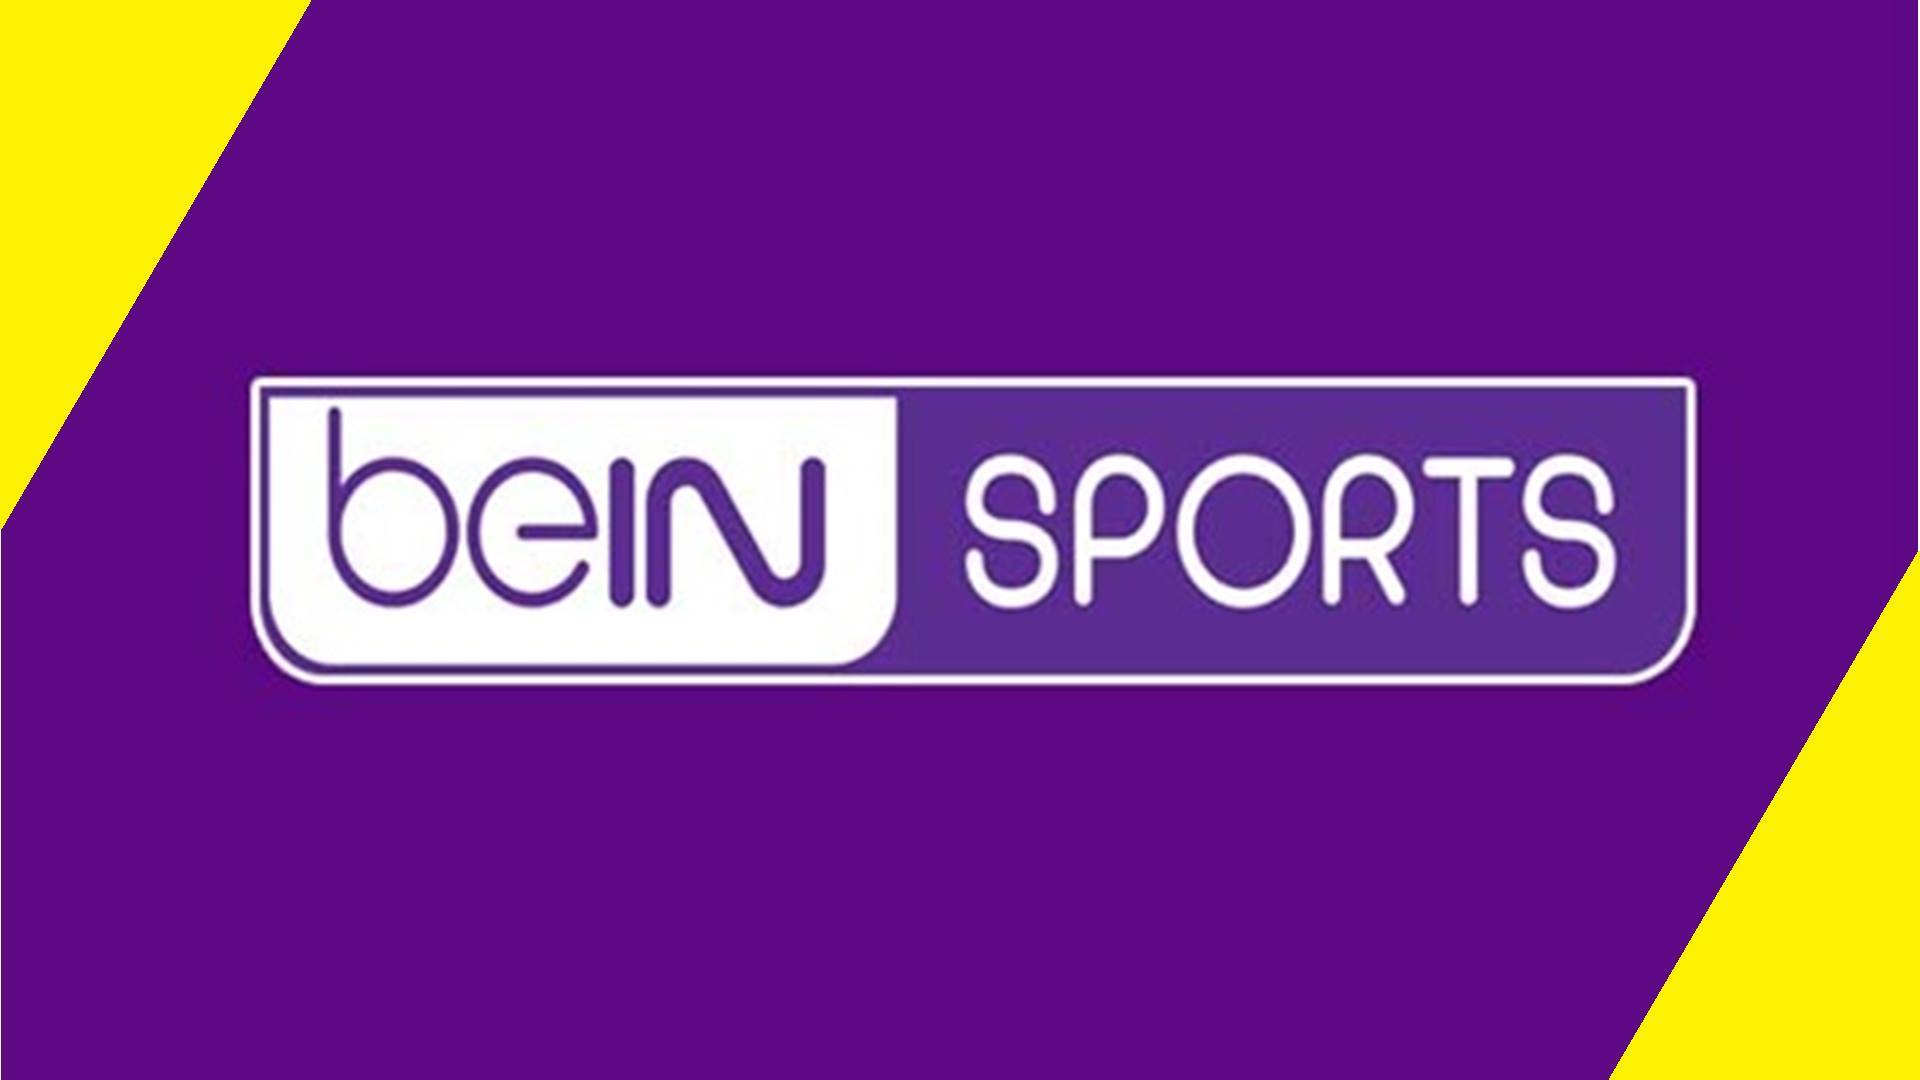 تردد قناة بي إن سبورت bein sports hd المفتوحة 2019 علي النايلسات وسهيل سات وعربسات